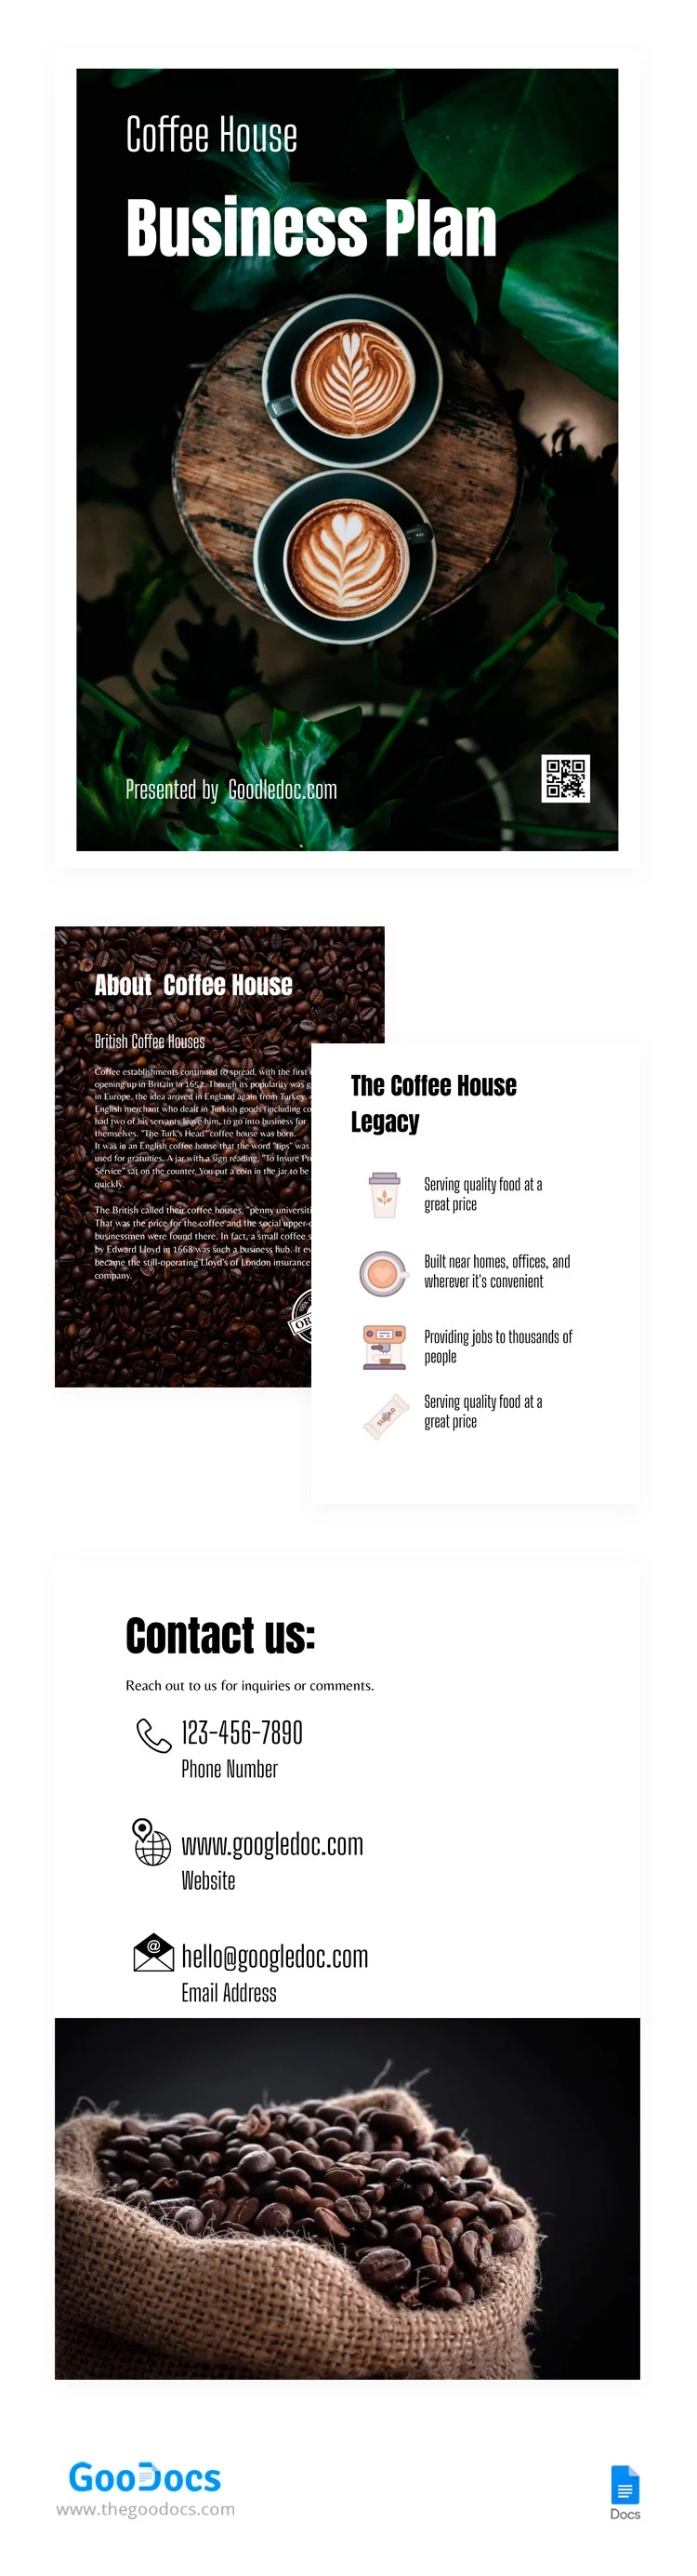 Kaffee-Geschäftsplan - free Google Docs Template - 10062909